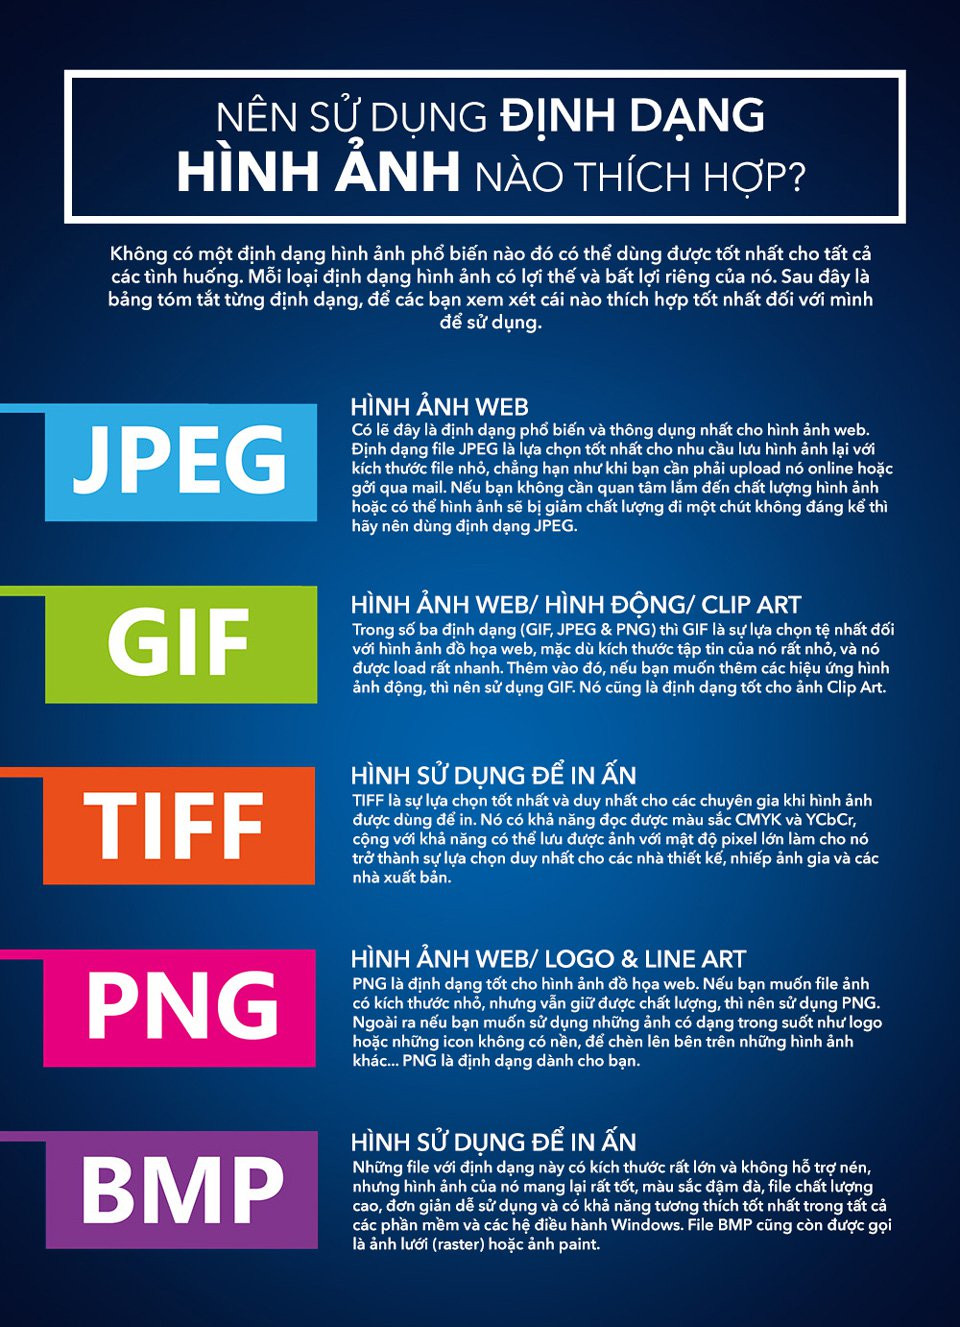 Infographic nên sử dụng định dạng JPG, PNG, GIF, TIFF và BMP